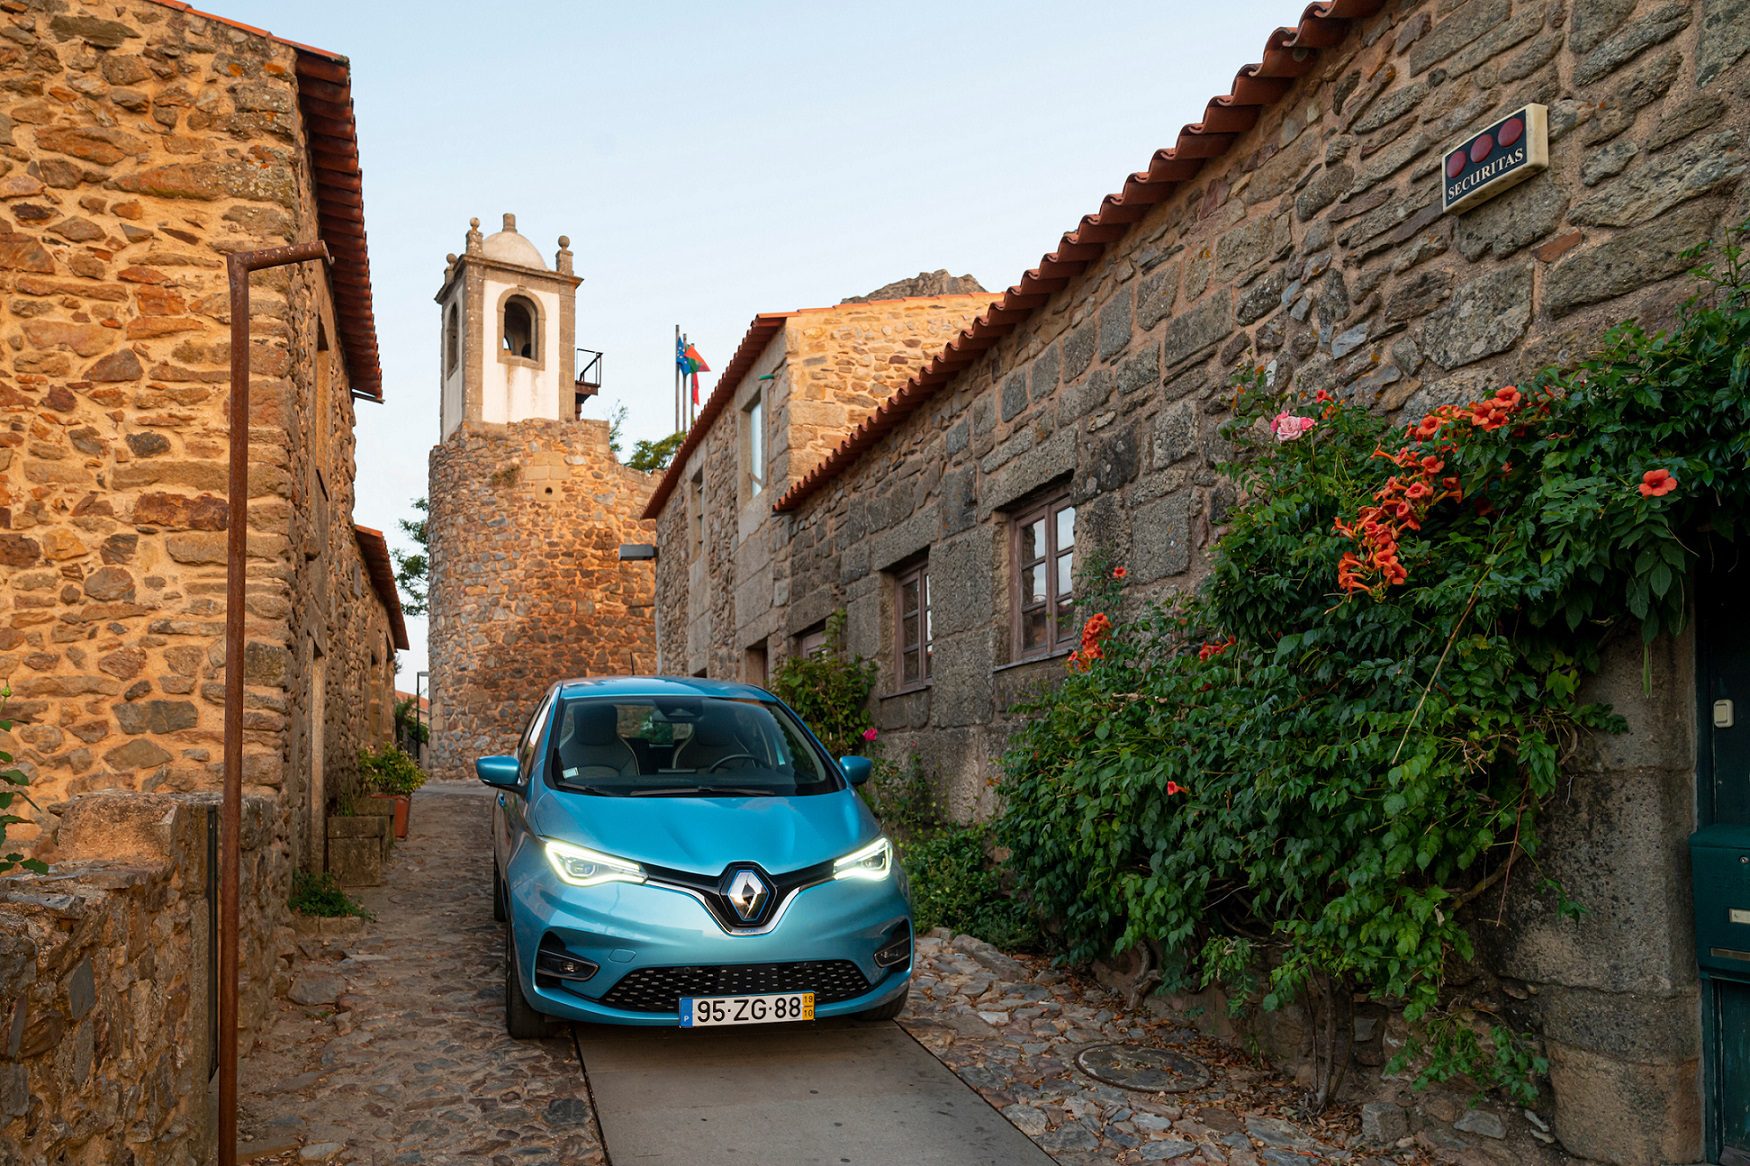 Renault e Aldeias Históricas de Portugal assinam protocolo para converter a Aldeia Histórica de Castelo Rodrigo na primeira localidade de Portugal Continental com mobilidade 100% sustentável